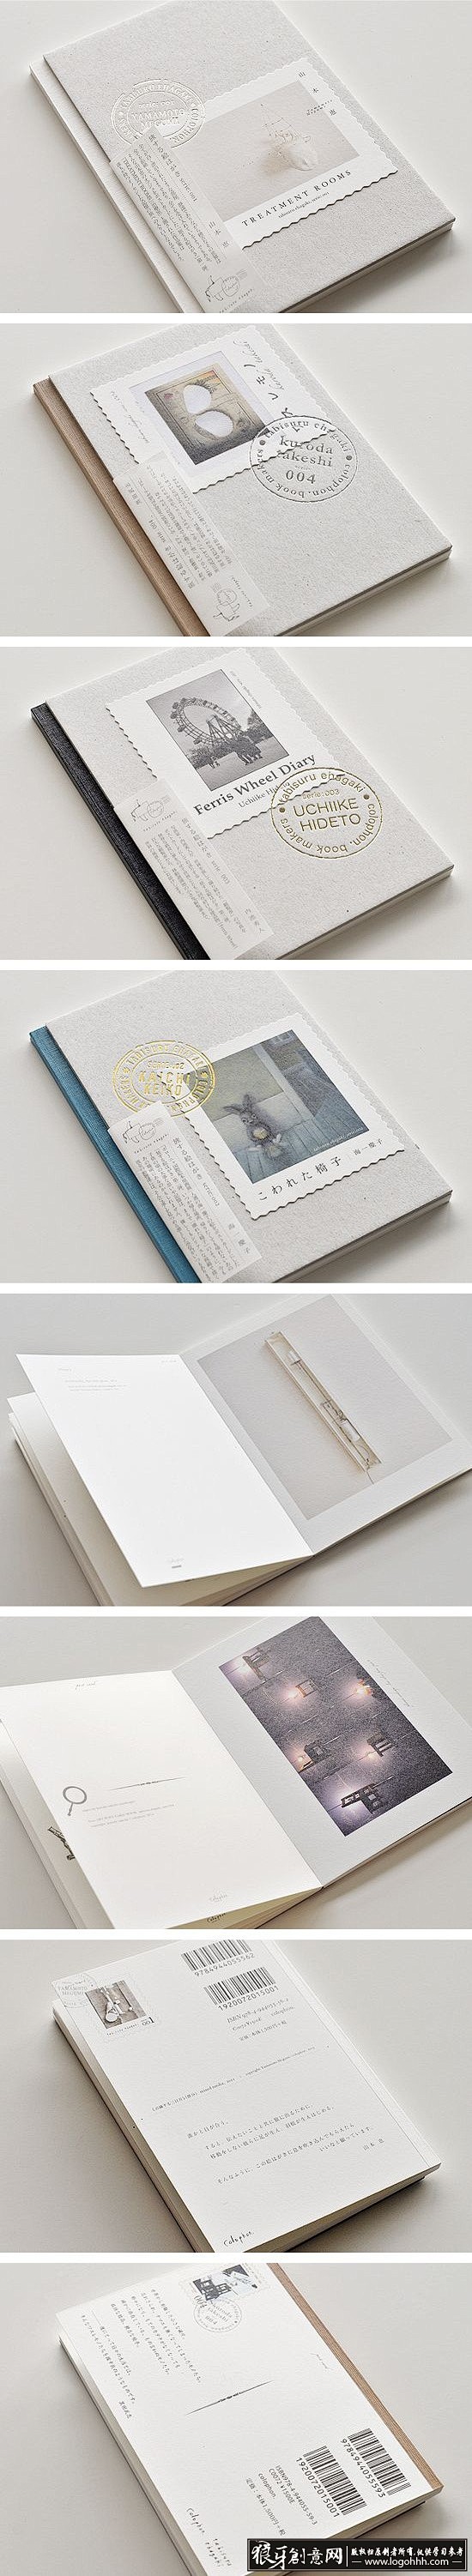 [创意画册] 日本画册设计日本书籍设计 ...